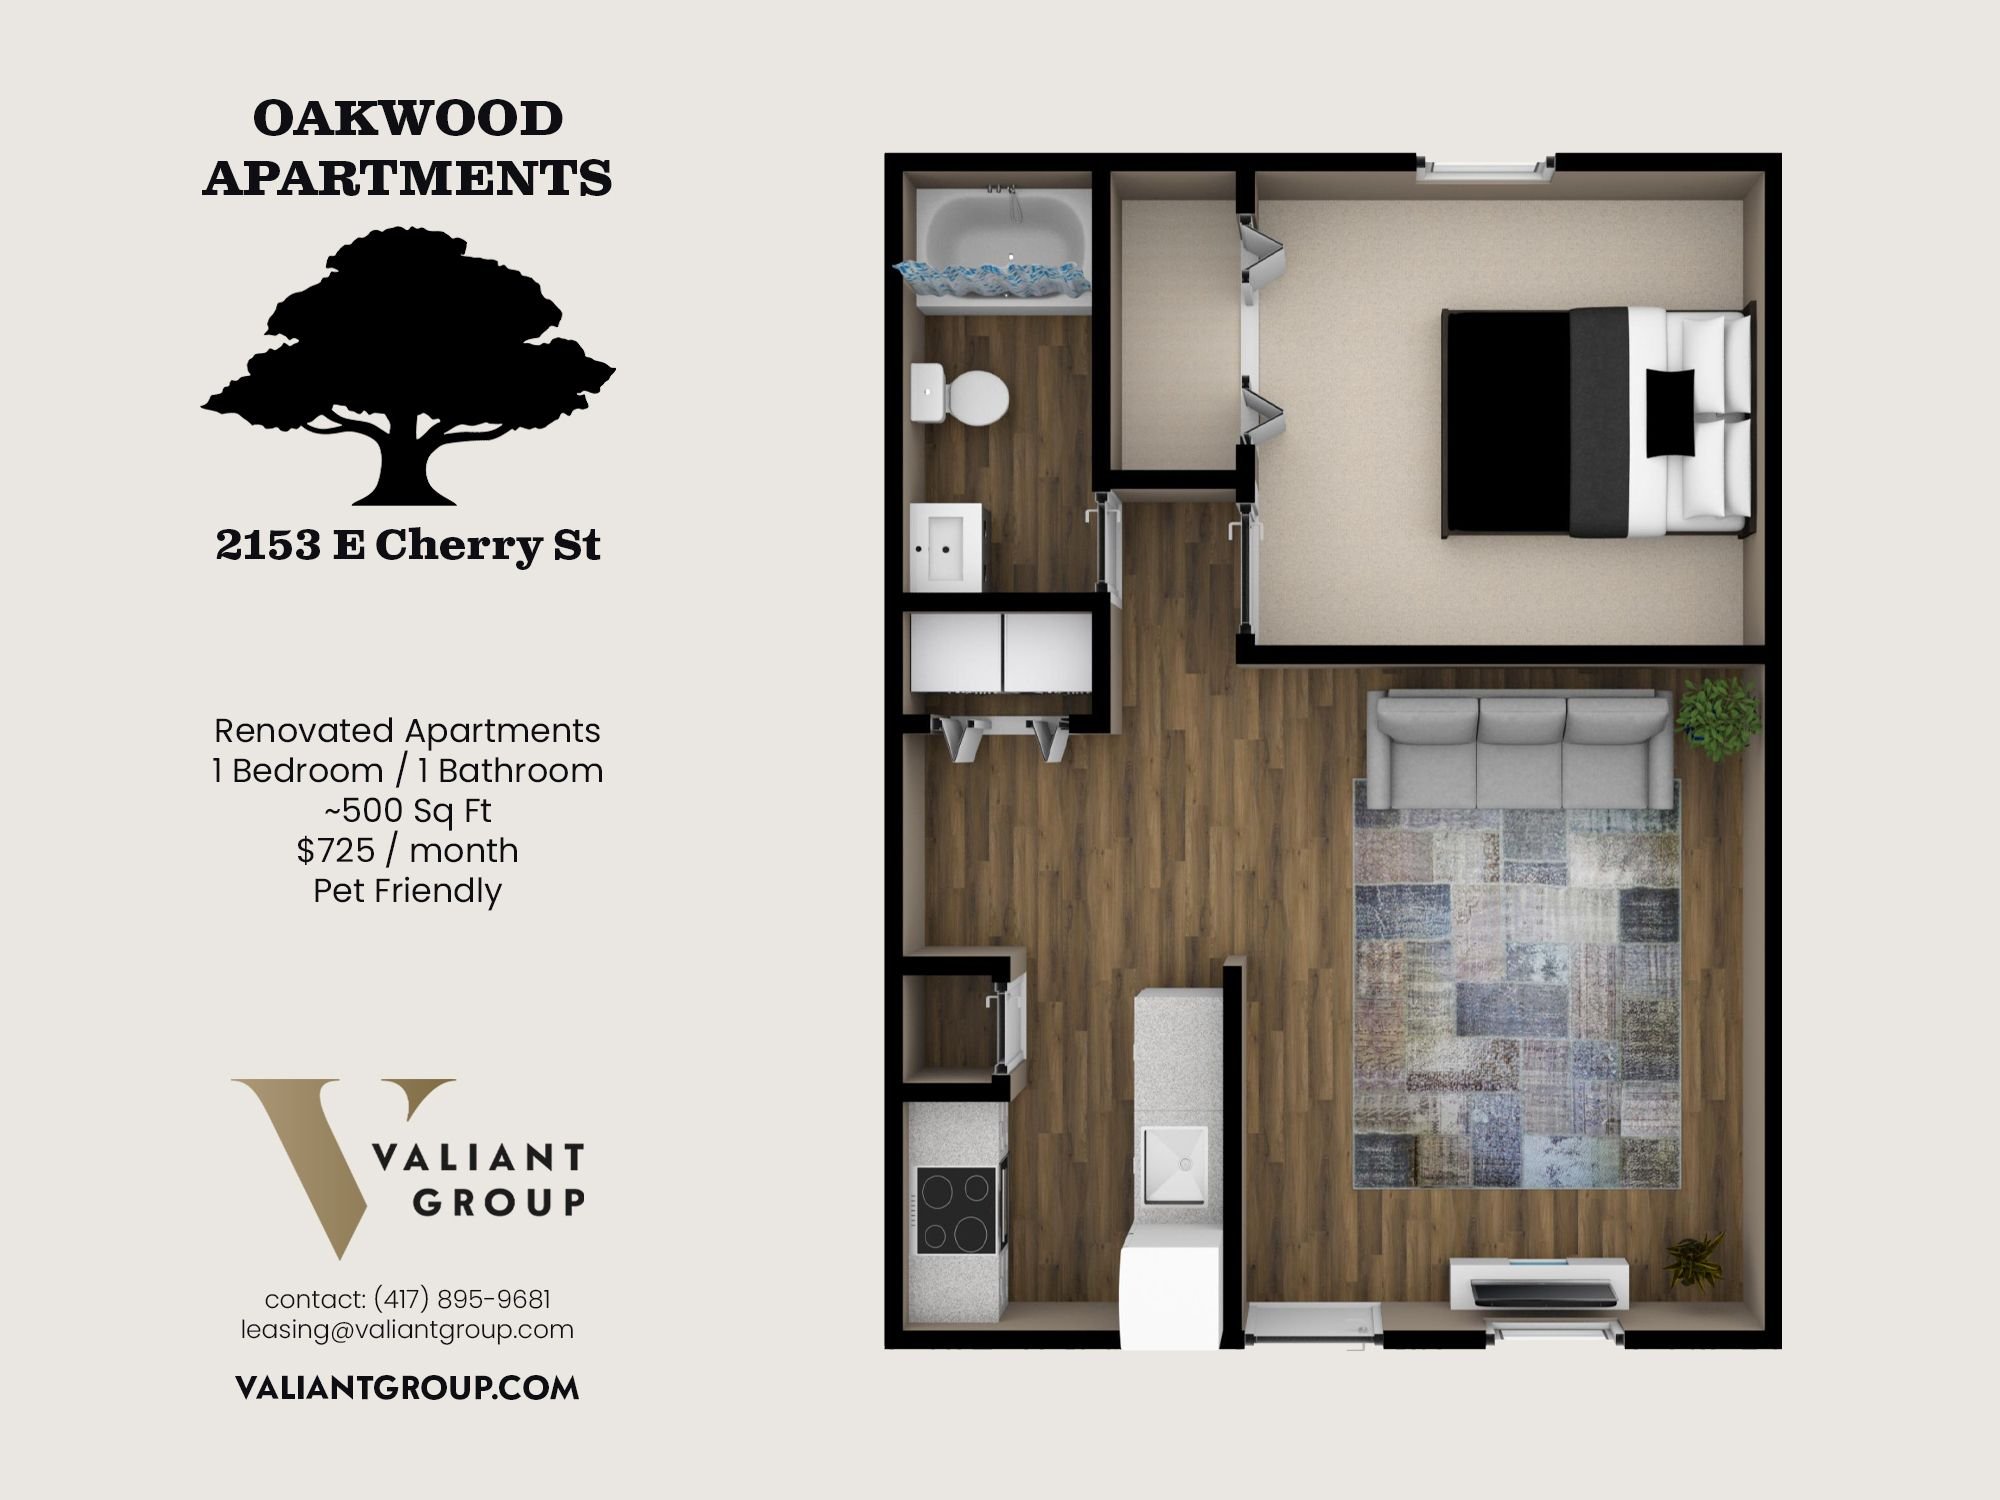 Oakwood-Apartments-2153-Cherry-rending-floorplan-compressed.jpg